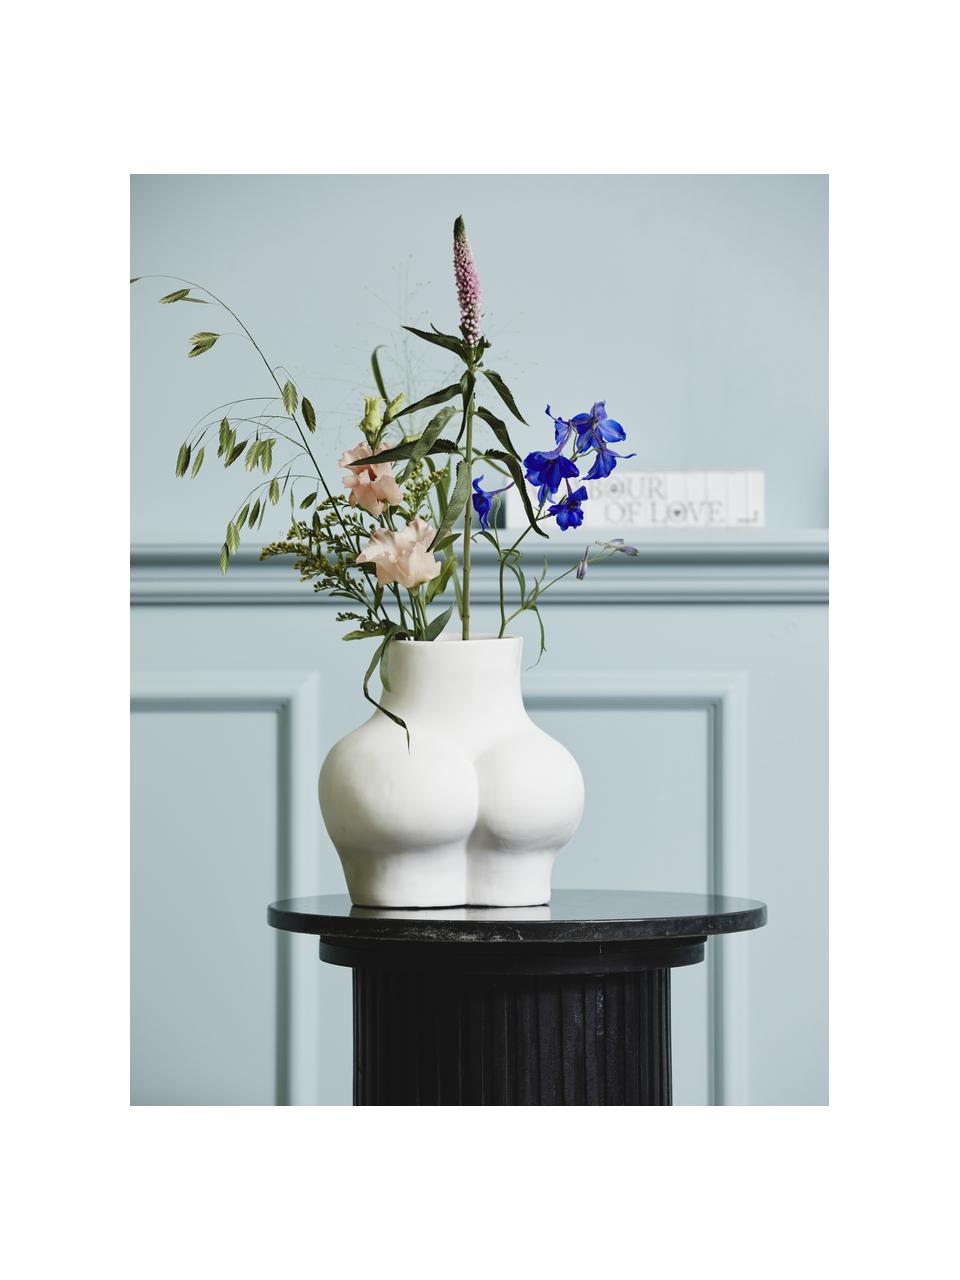 Vaso di design Avaji, alt. 23 cm, Ceramica, Bianco, Larg. 22 x Alt. 23 cm